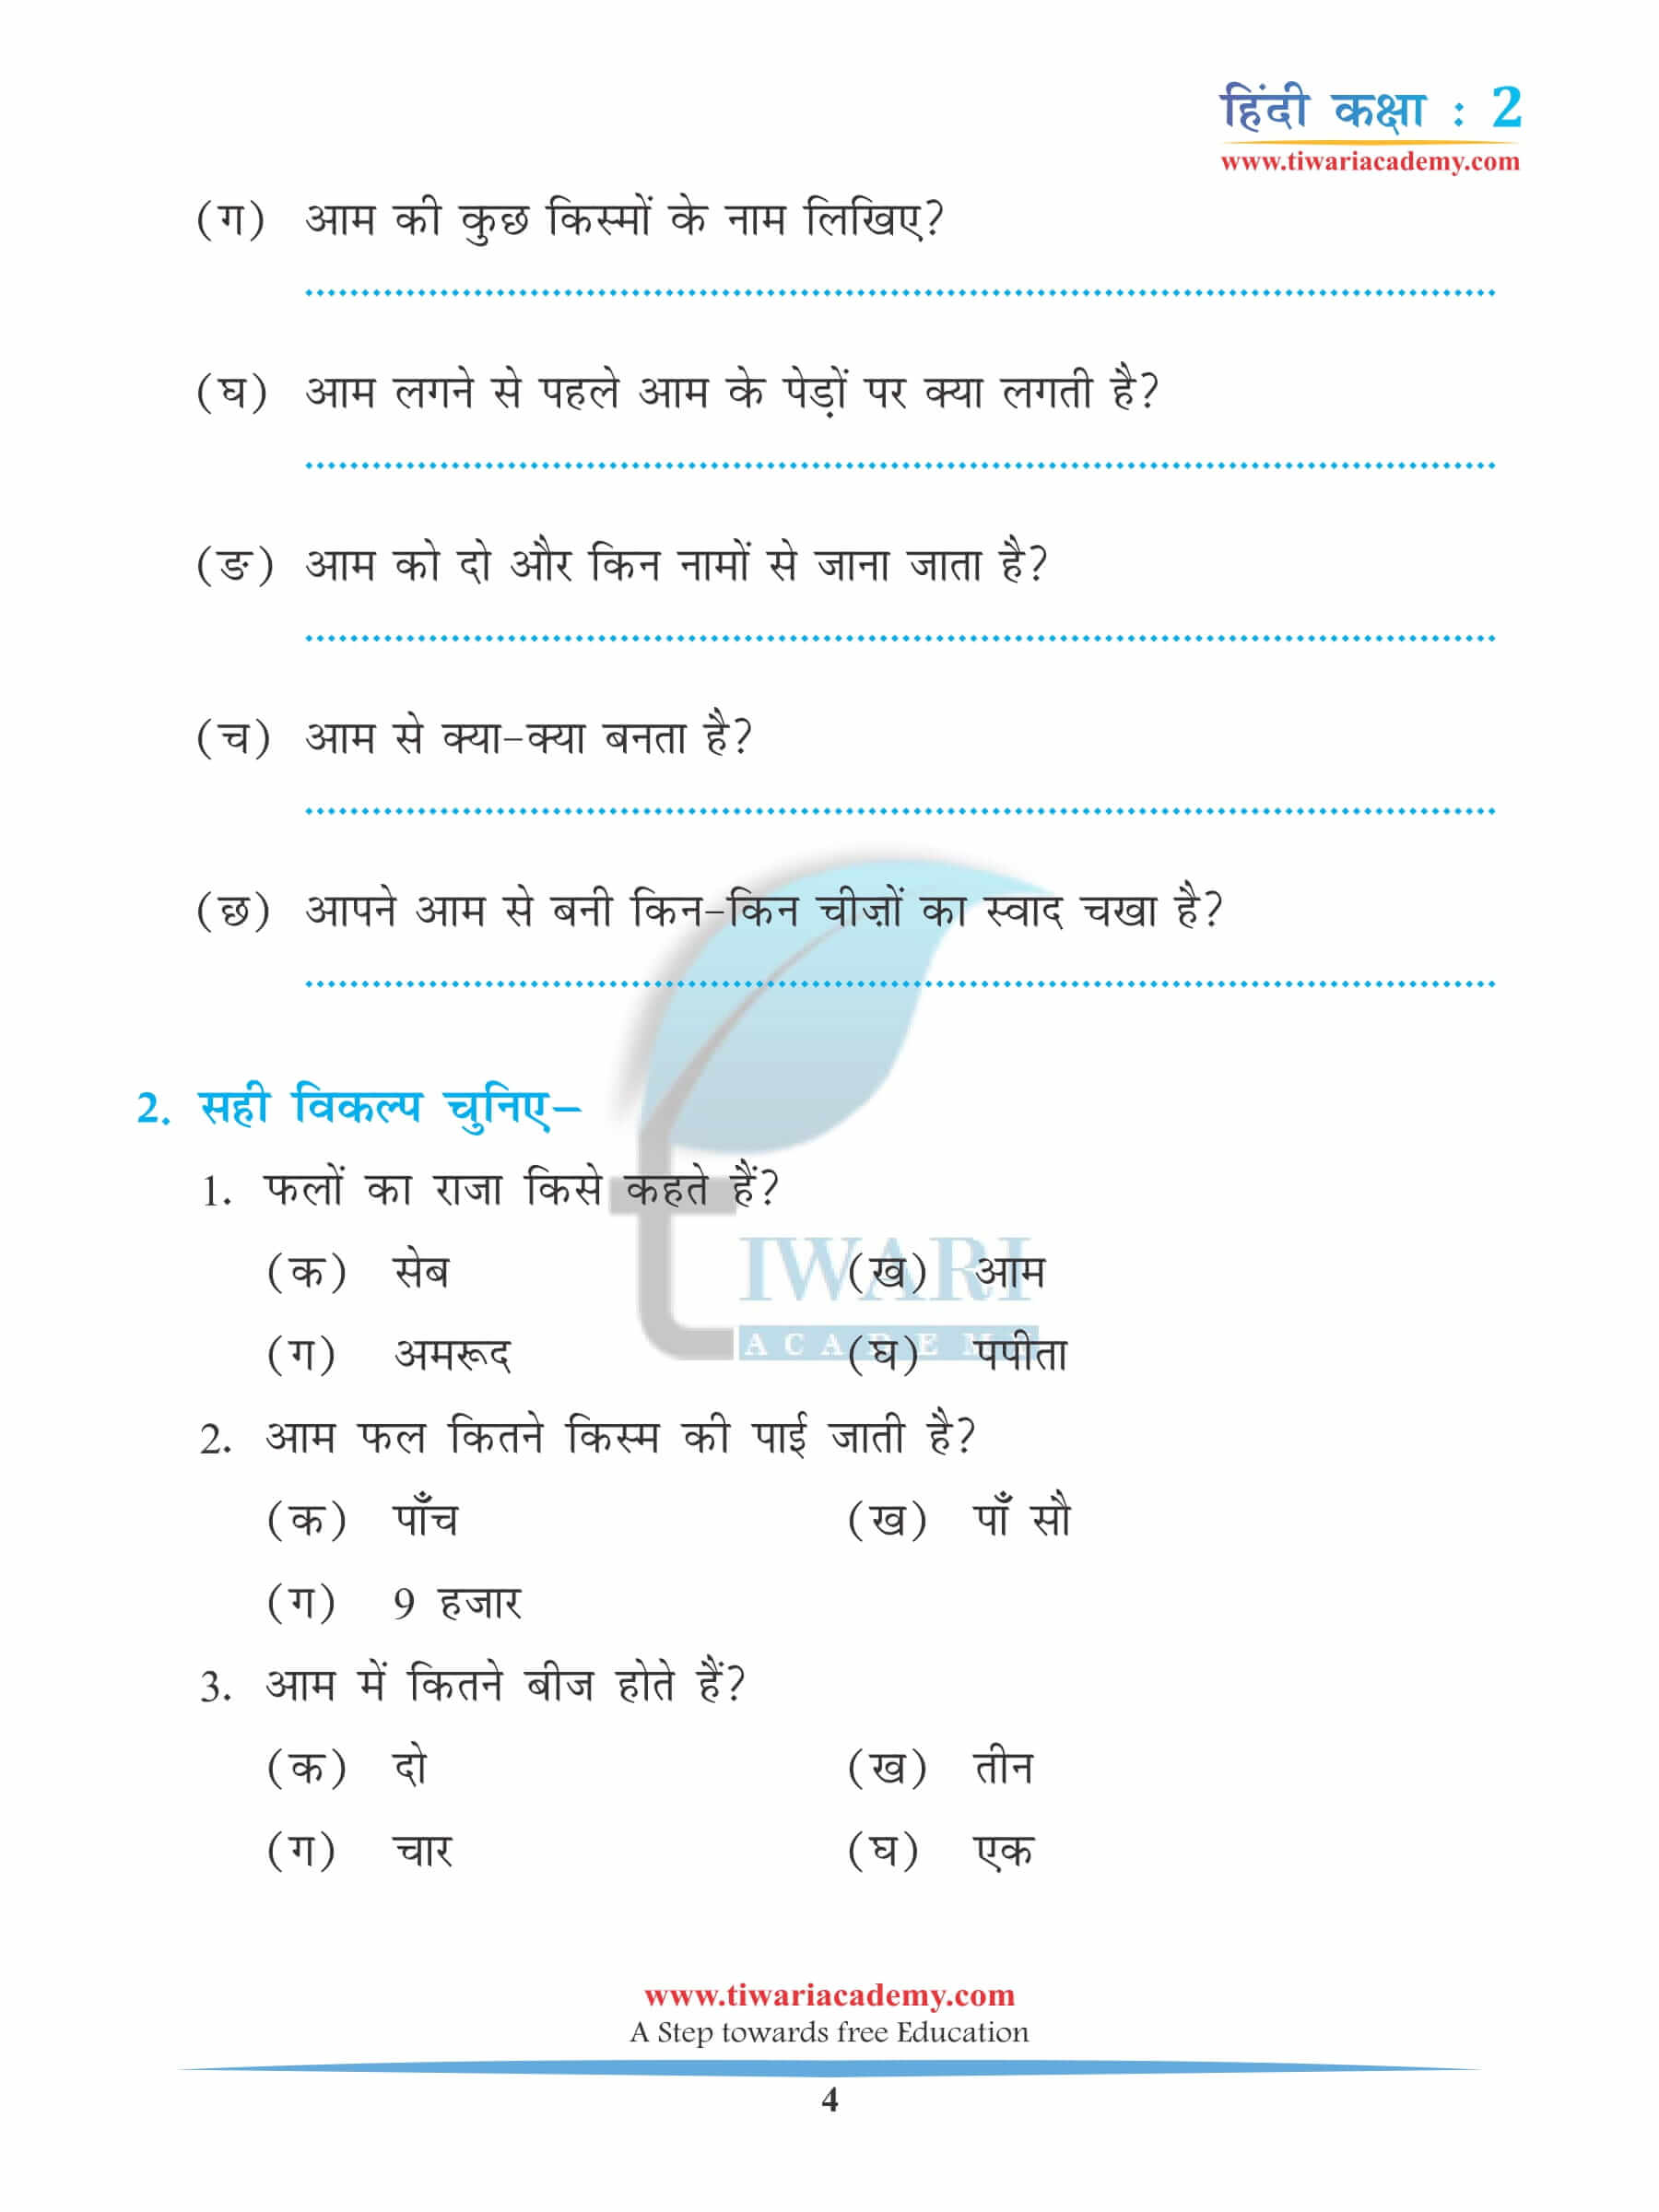 कक्षा 2 हिंदी अध्याय 14 अभ्यास के रिक्त स्थान